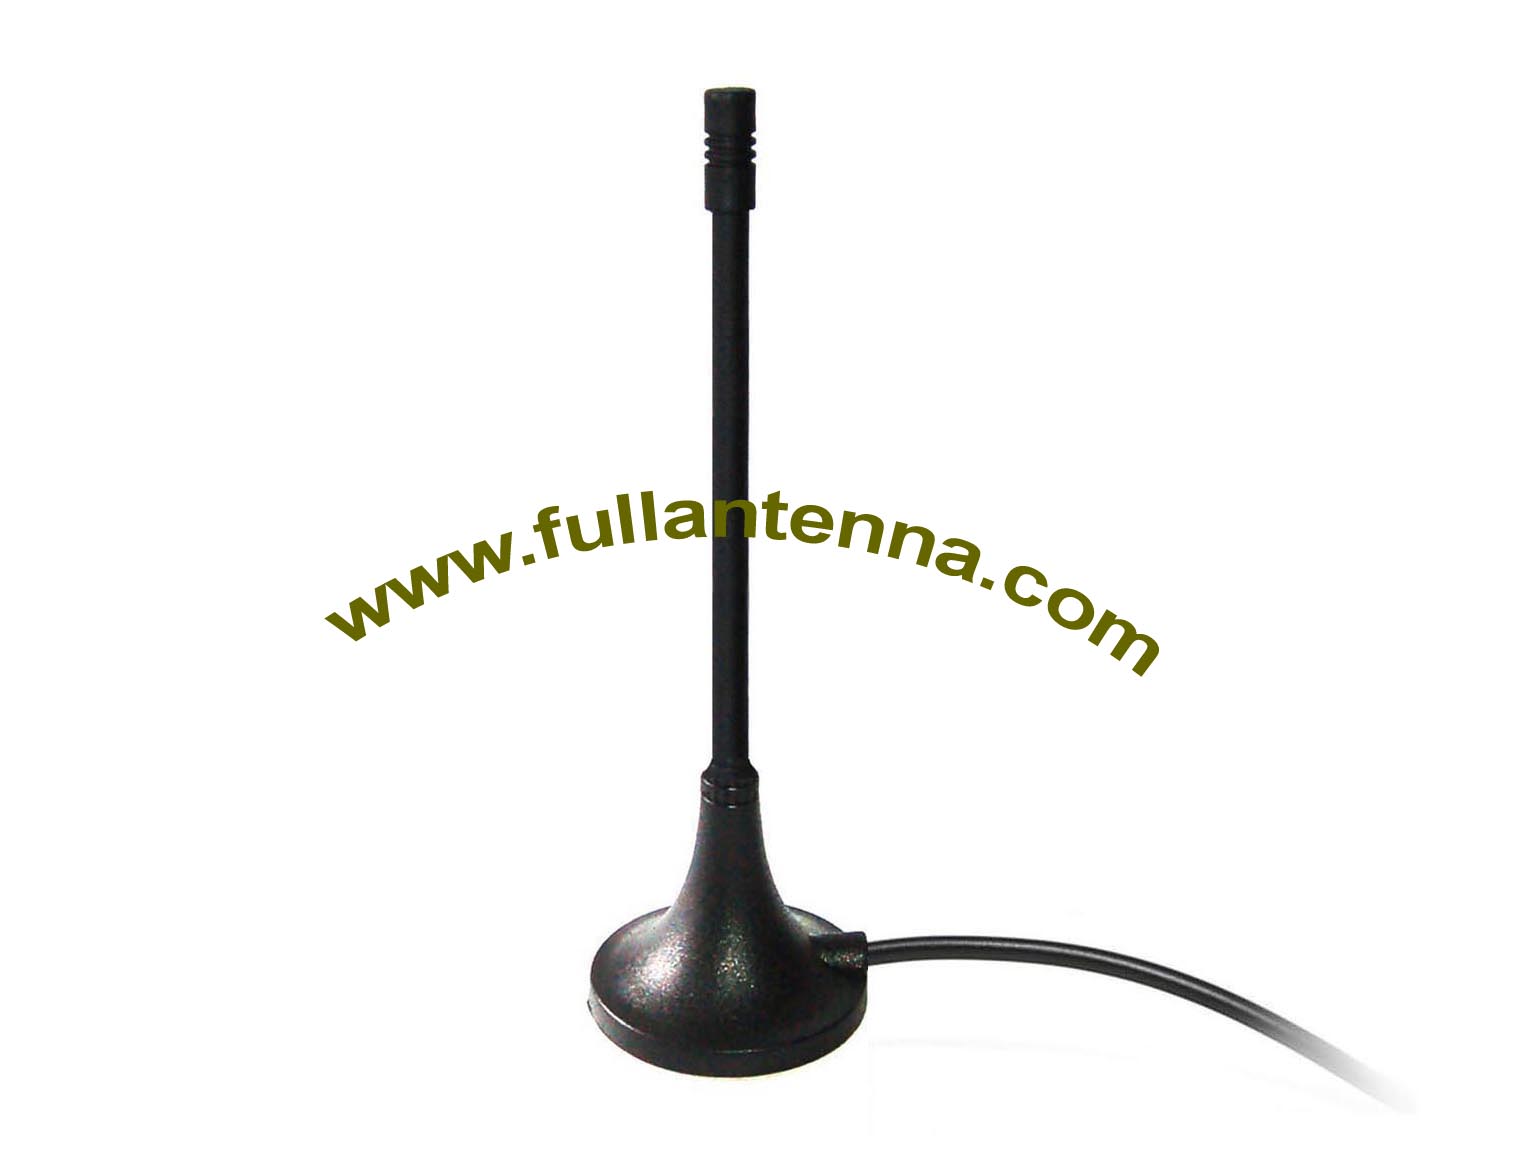 P / N: FA2400.03, Antena externa WiFi / 2.4G, montaje magnético, antena de látigo RP SMA